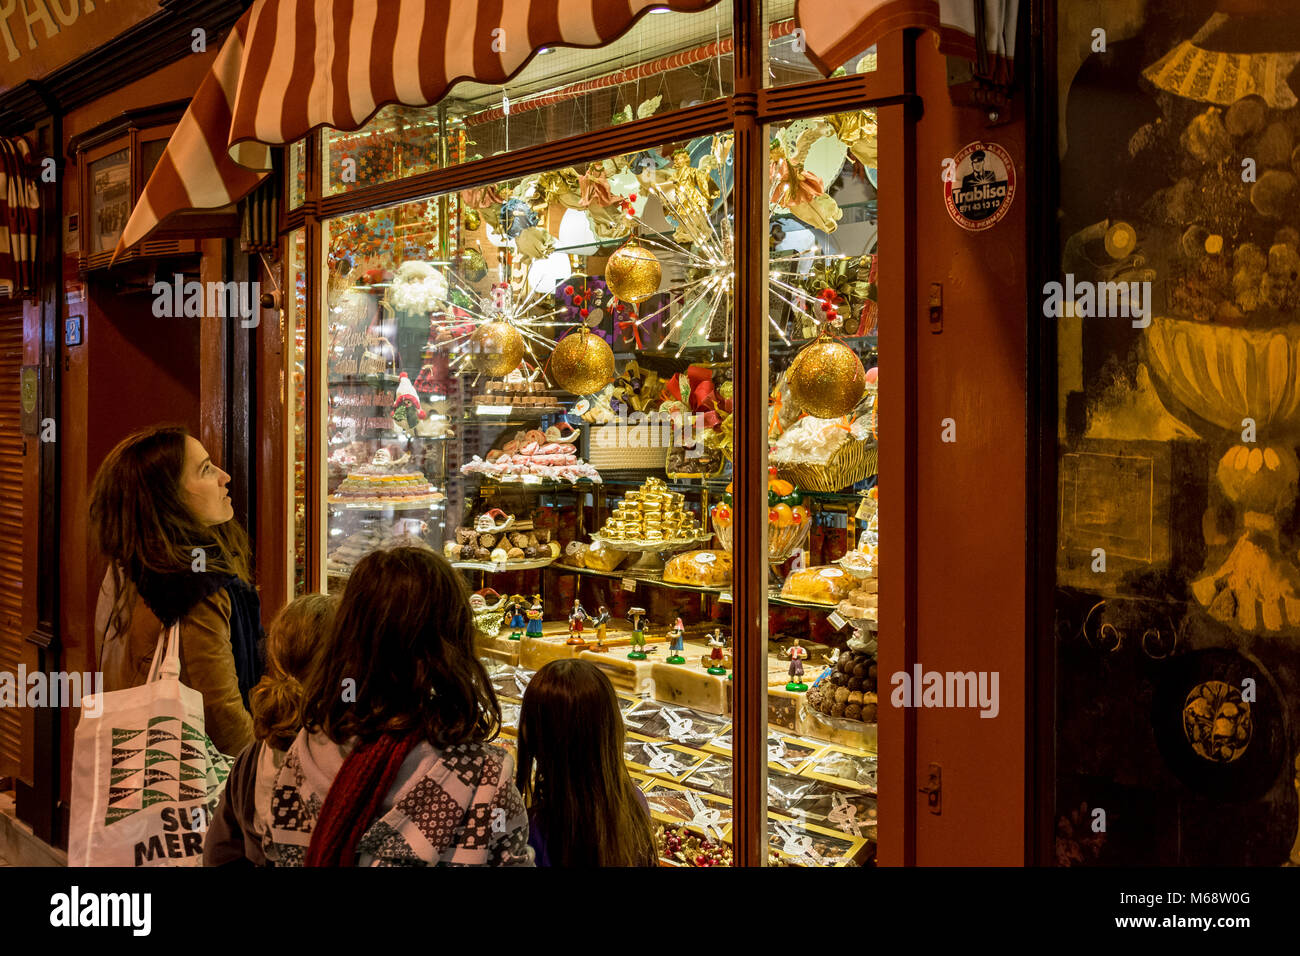 Auslage, Schaufenster eines Süßwarengeschäfts in Palma de Mallorca mit staunenden Passanten Stock Photo